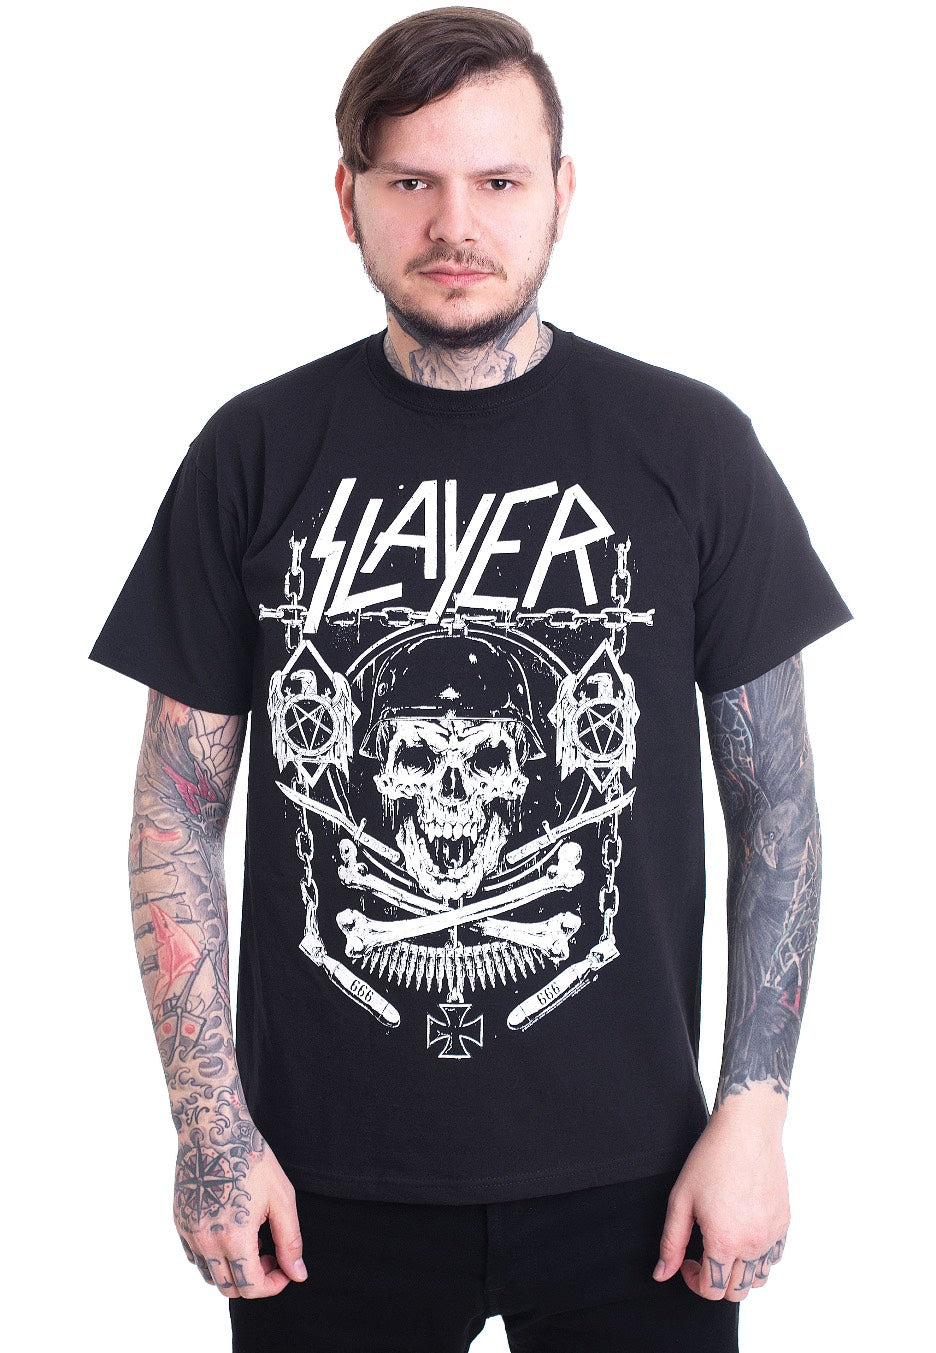 Slayer - Skull & Bones Revised - T-Shirt